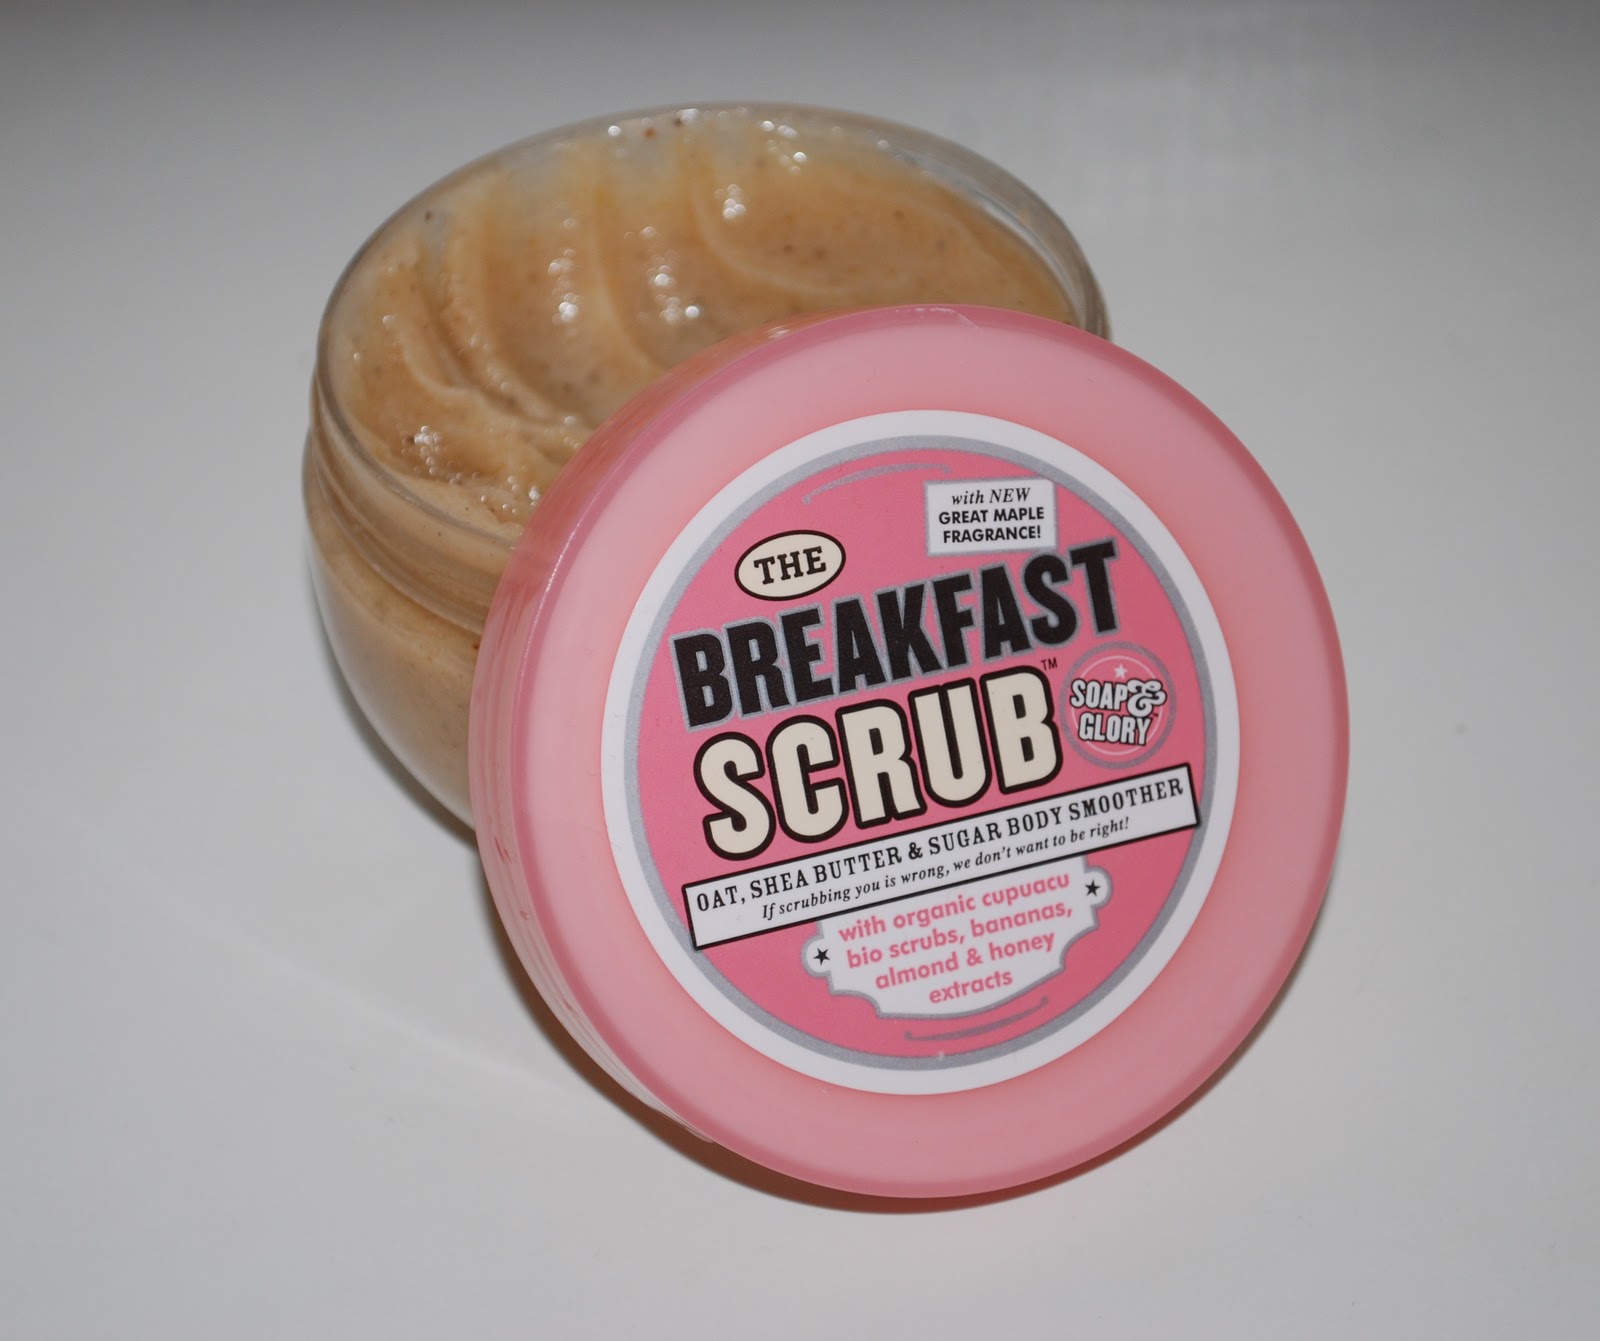 Soap+%2526+Glory+Breakfast+Scrub.JPG